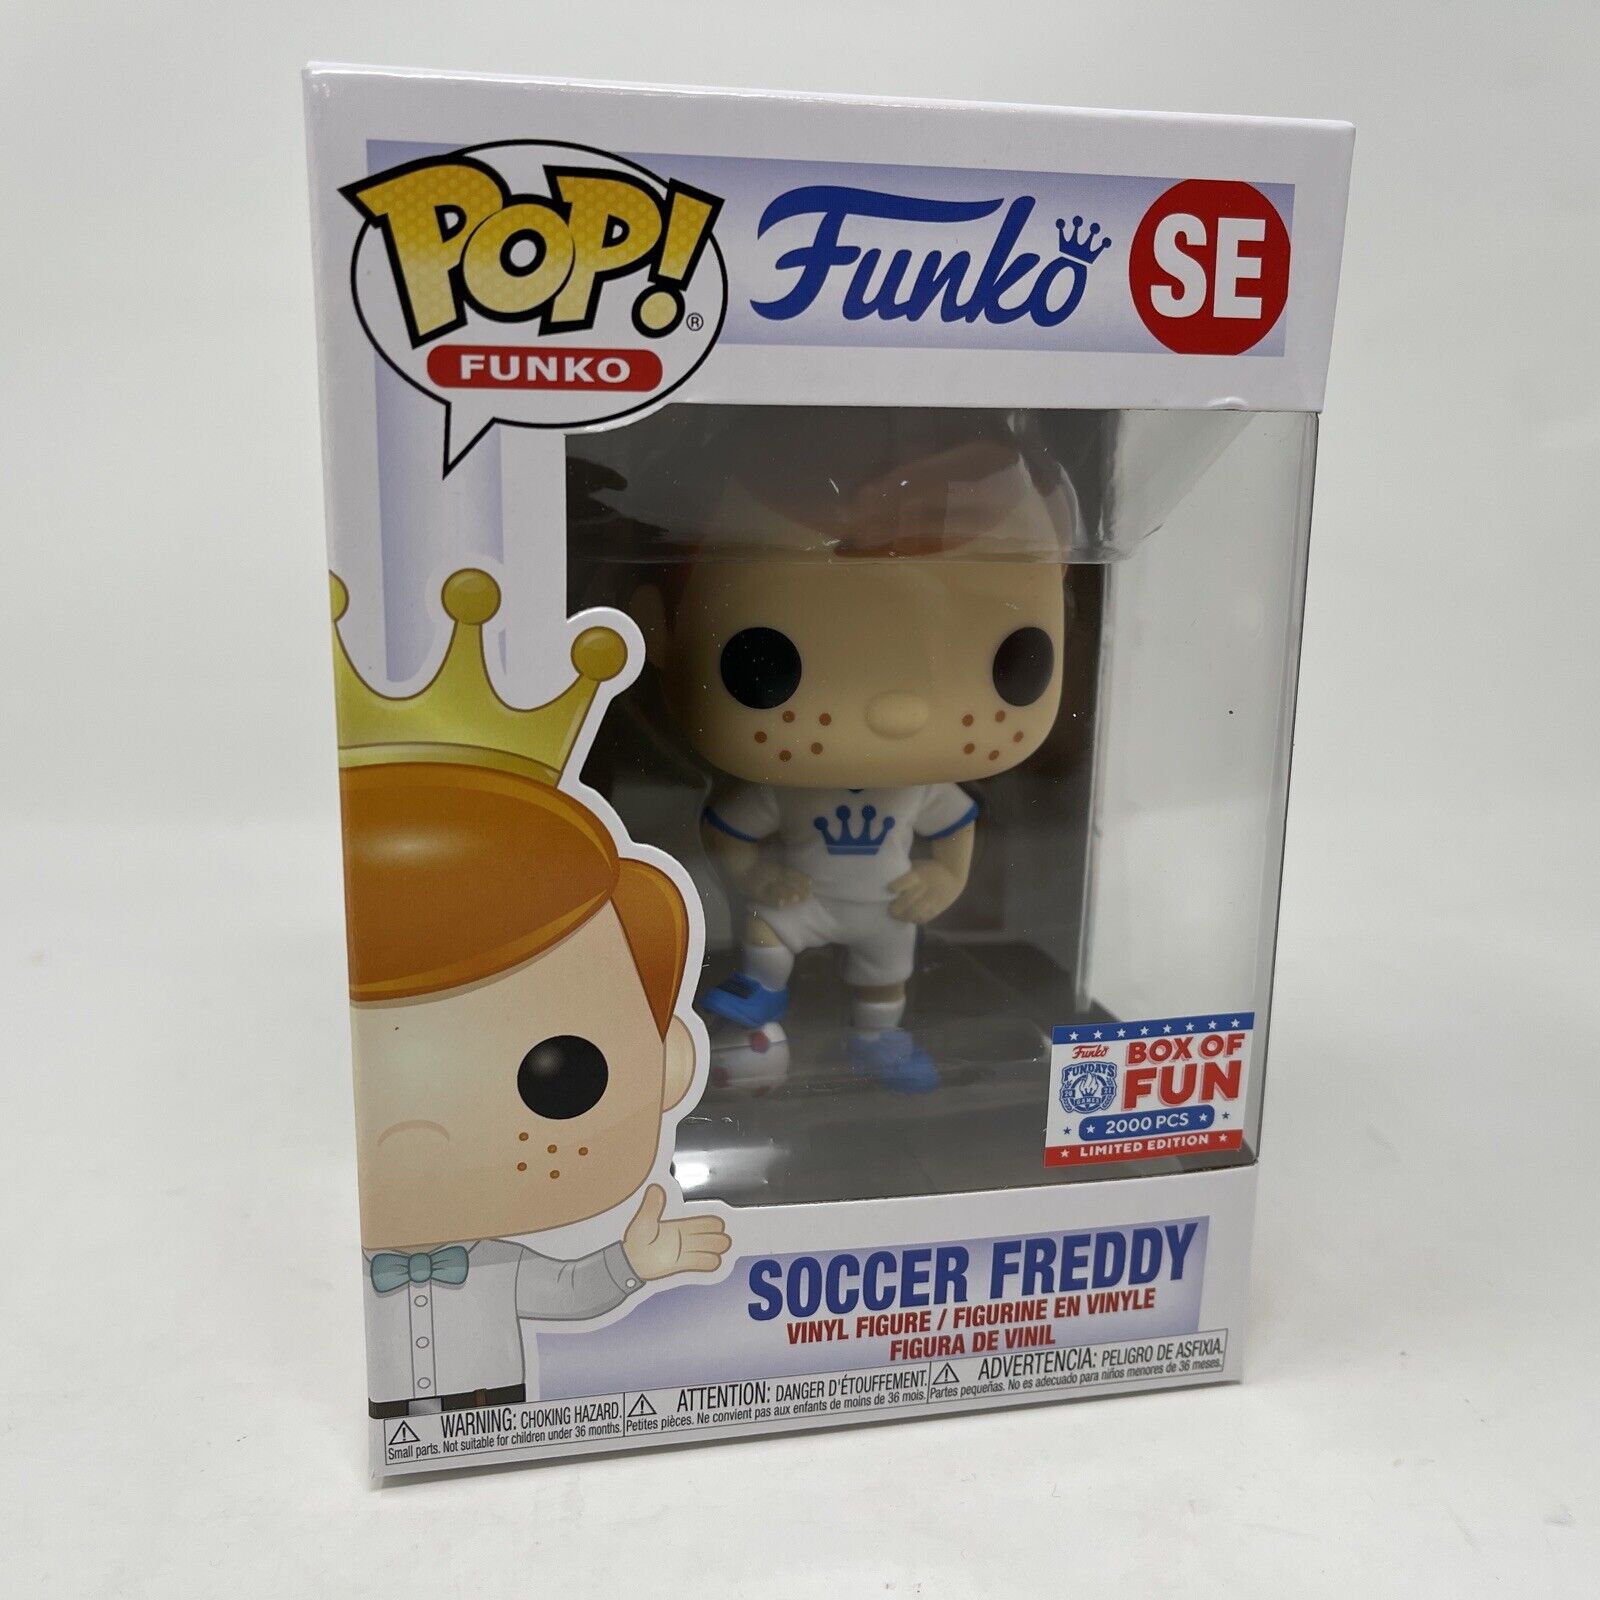 Funko POP Soccer Freddy FUNDAYS 2021 Box of Fun Funkon Exclusive LE2000